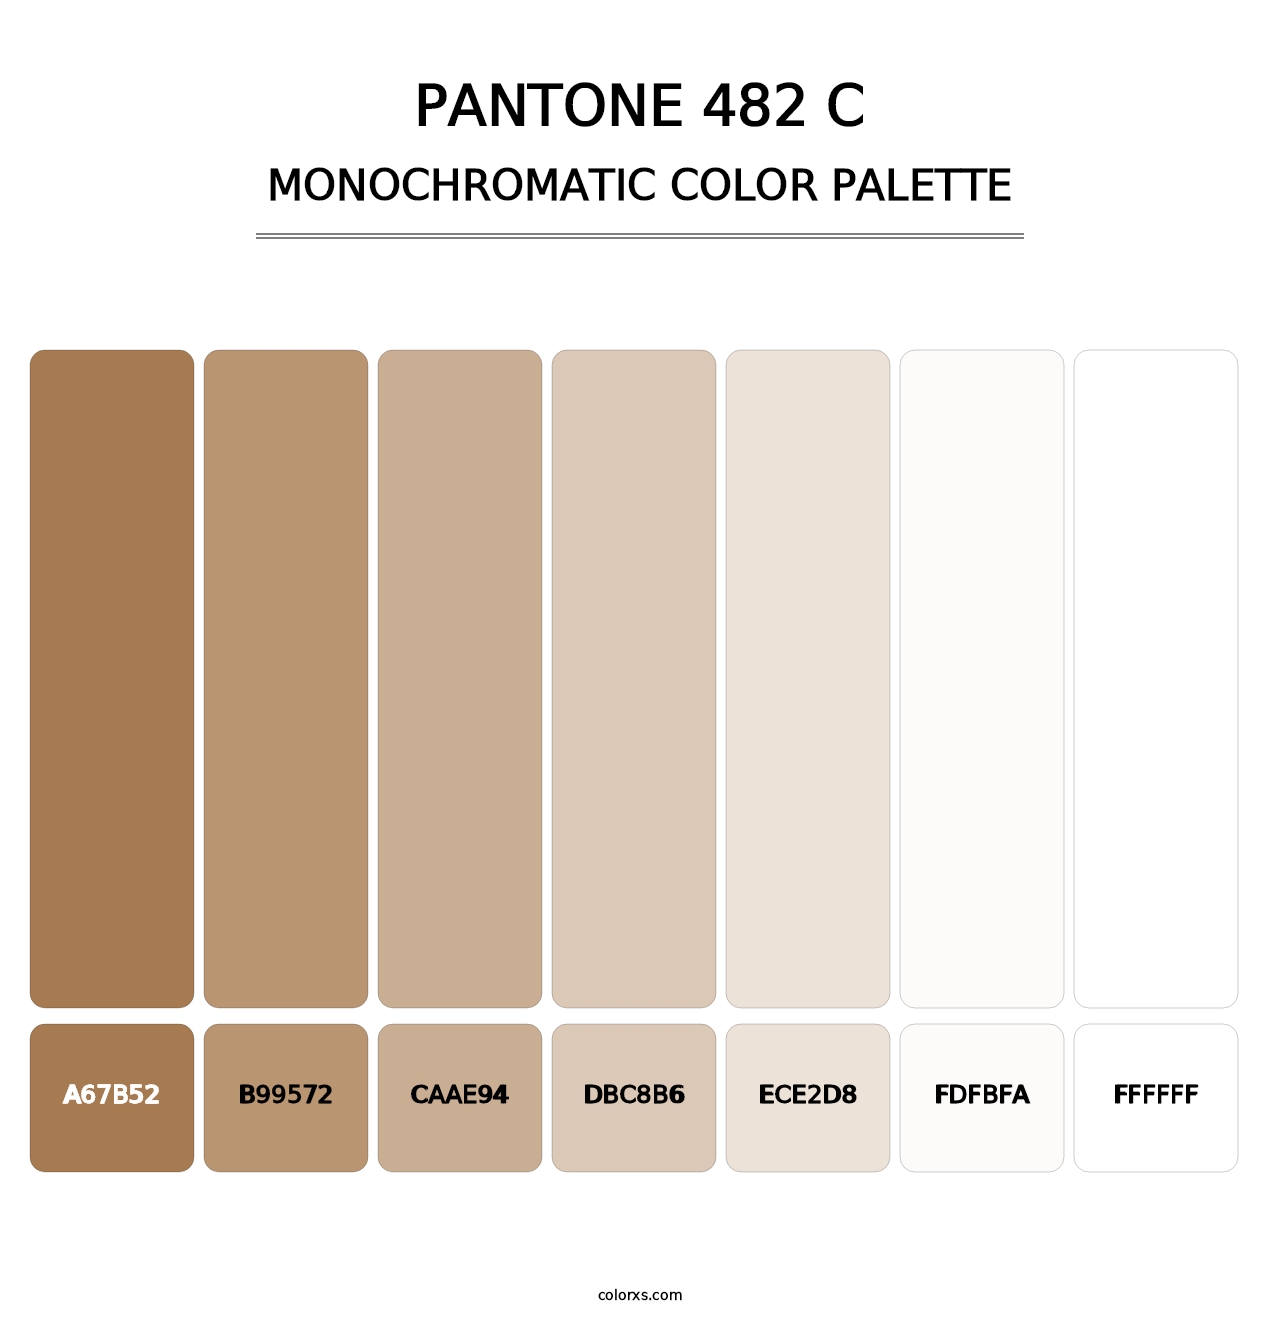 PANTONE 482 C - Monochromatic Color Palette